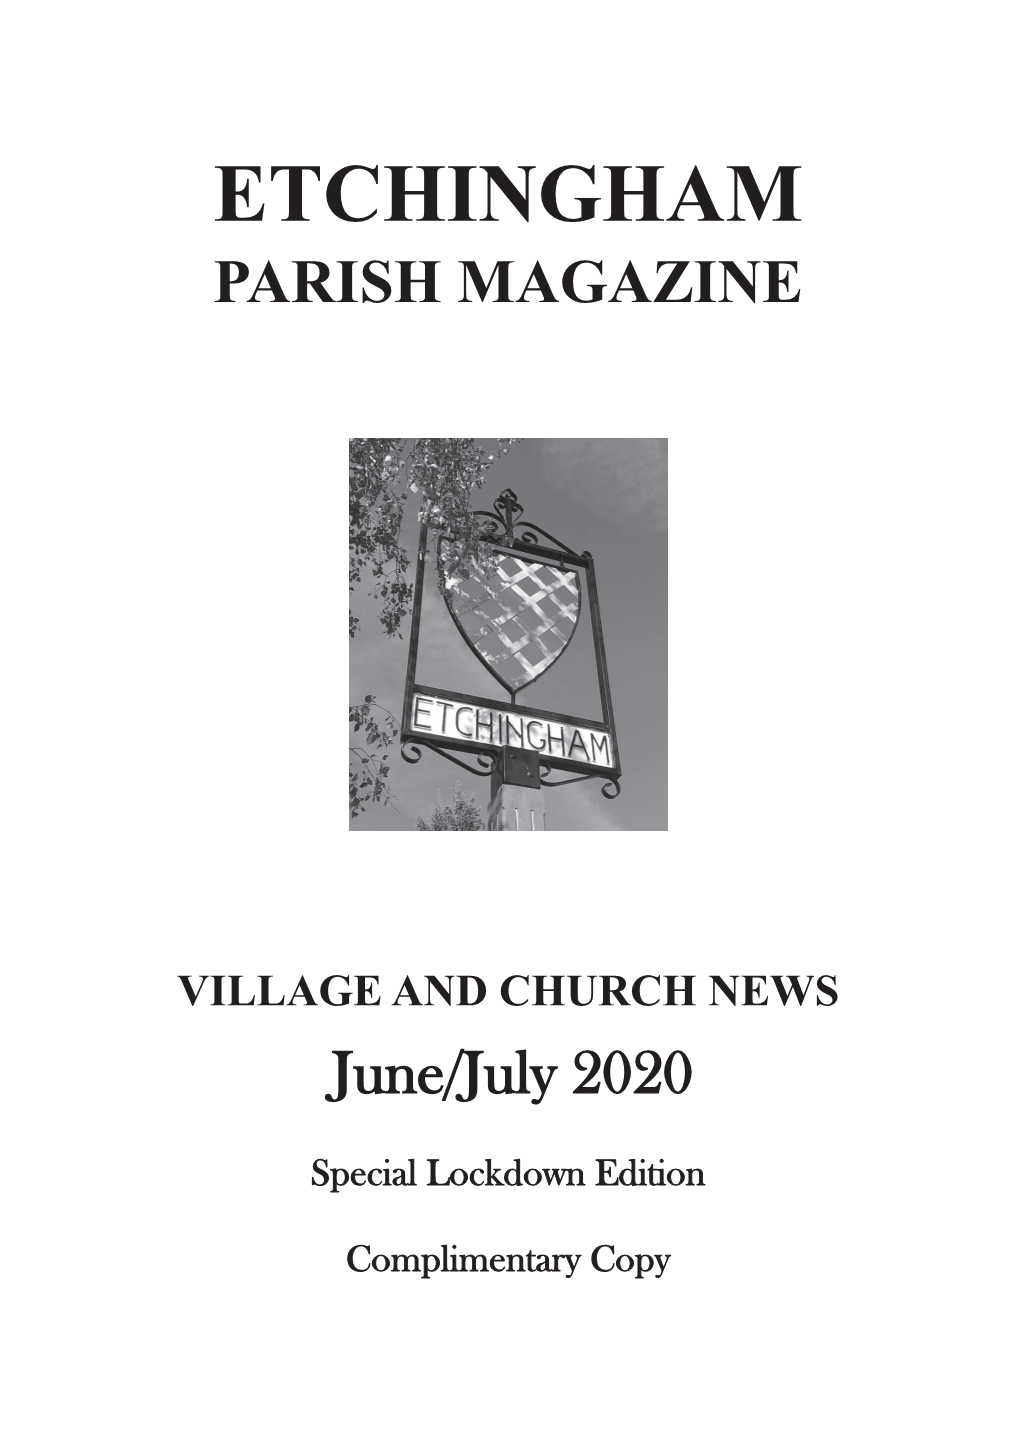 Etchingham Parish Council